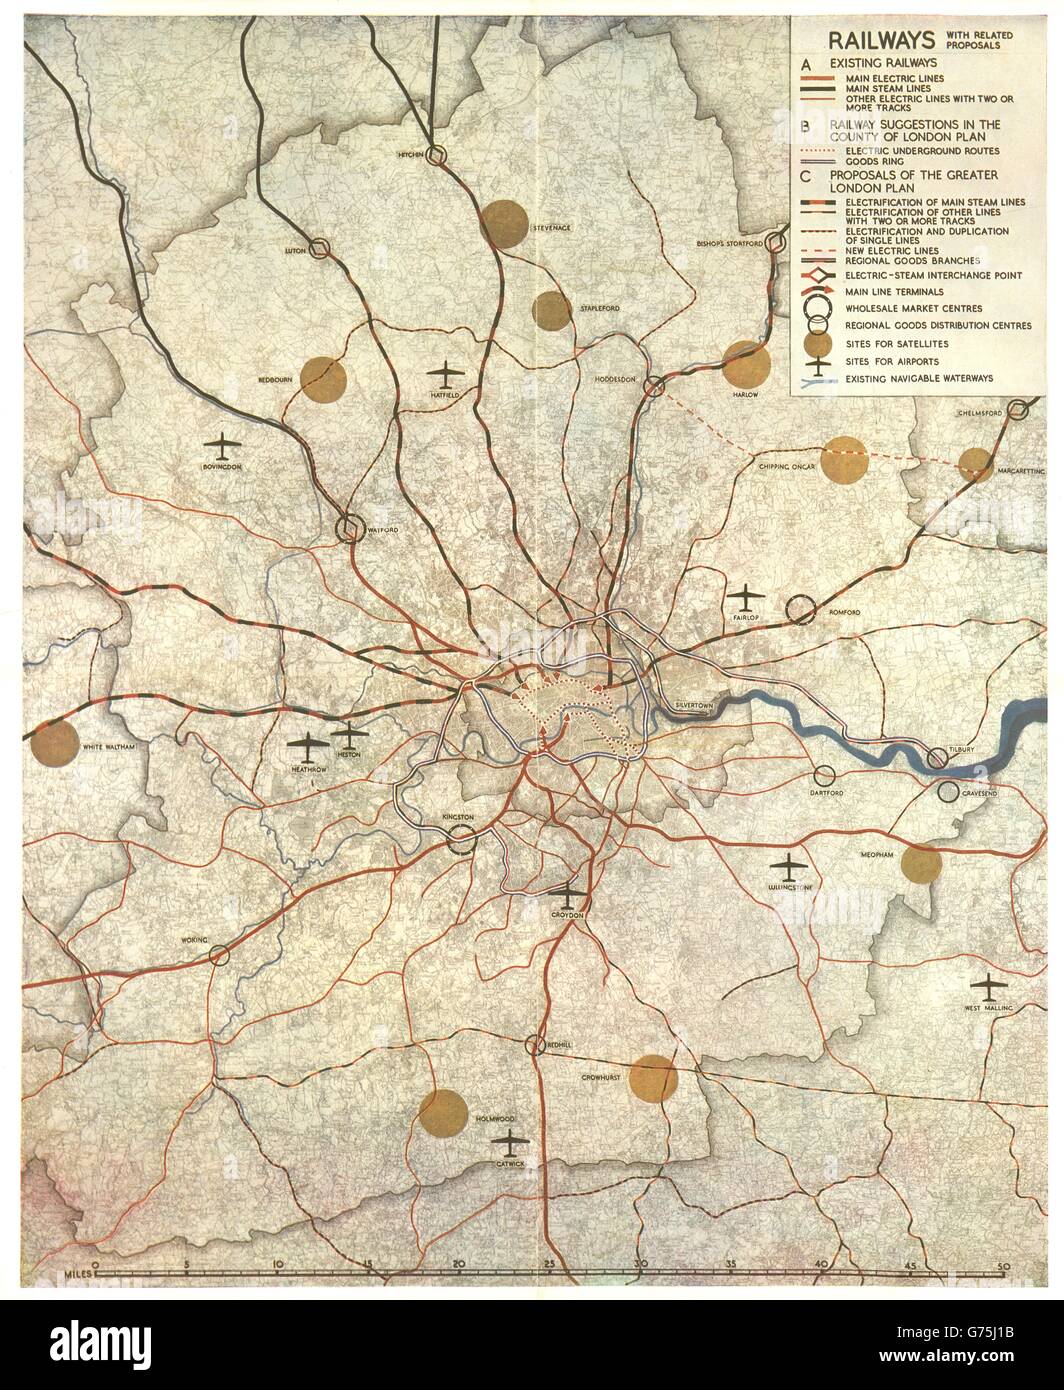 PLAN DU GRAND LONDRES. L'électrification des chemins de fer d'aéroports. ABERCROMBIE, 1944 map Banque D'Images